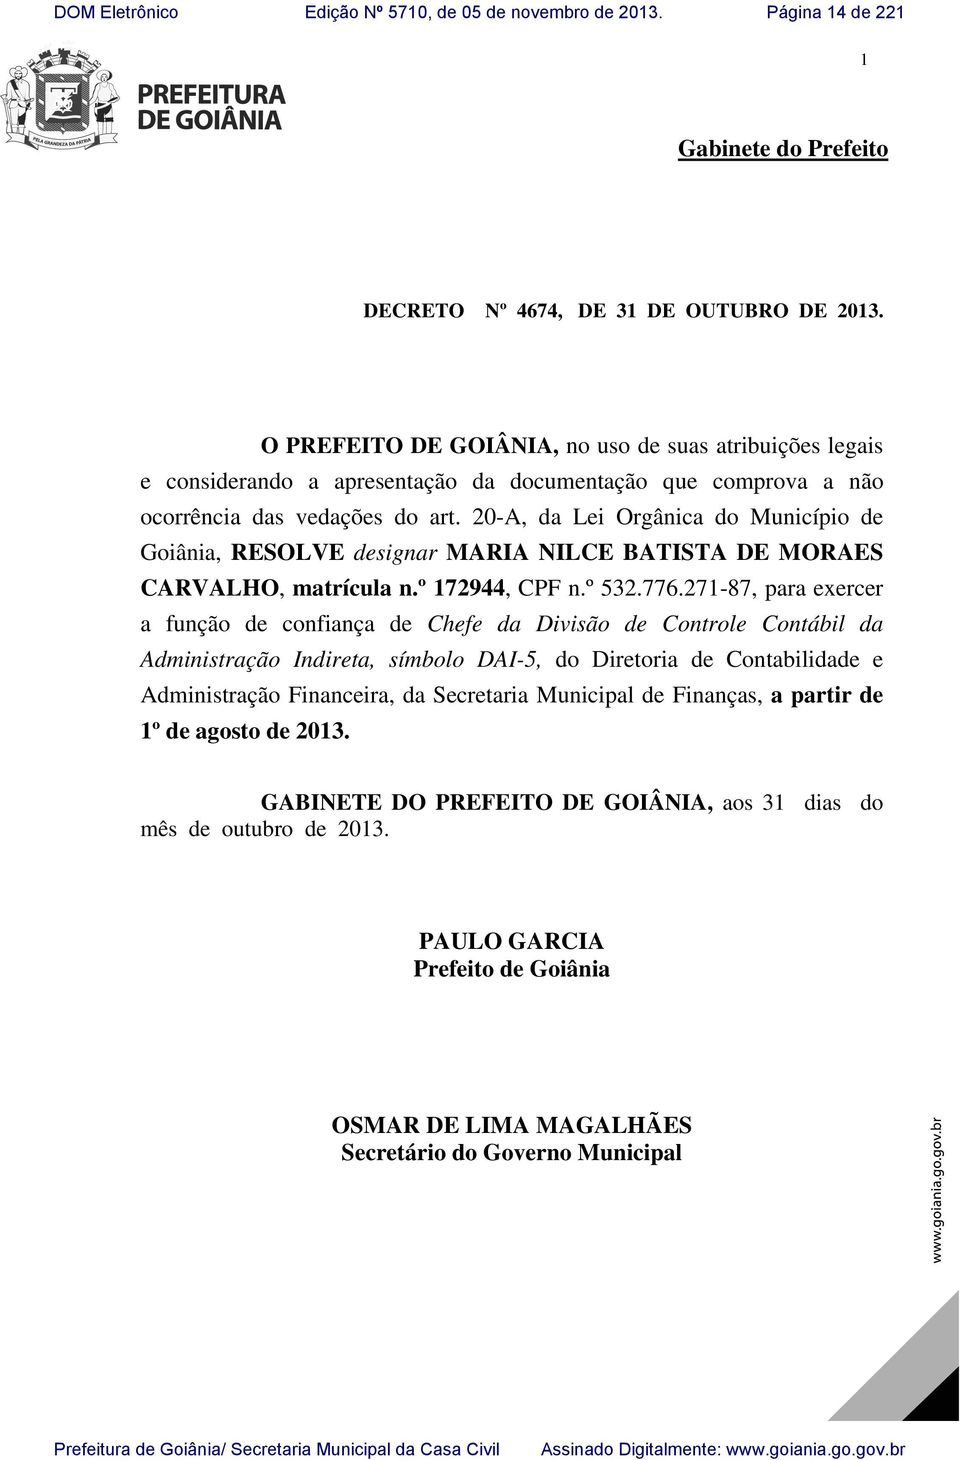 20-A, da Lei Orgânica do Município de Goiânia, RESOLVE designar MARIA NILCE BATISTA DE MORAES CARVALHO, matrícula n.º 172944, CPF n.º 532.776.